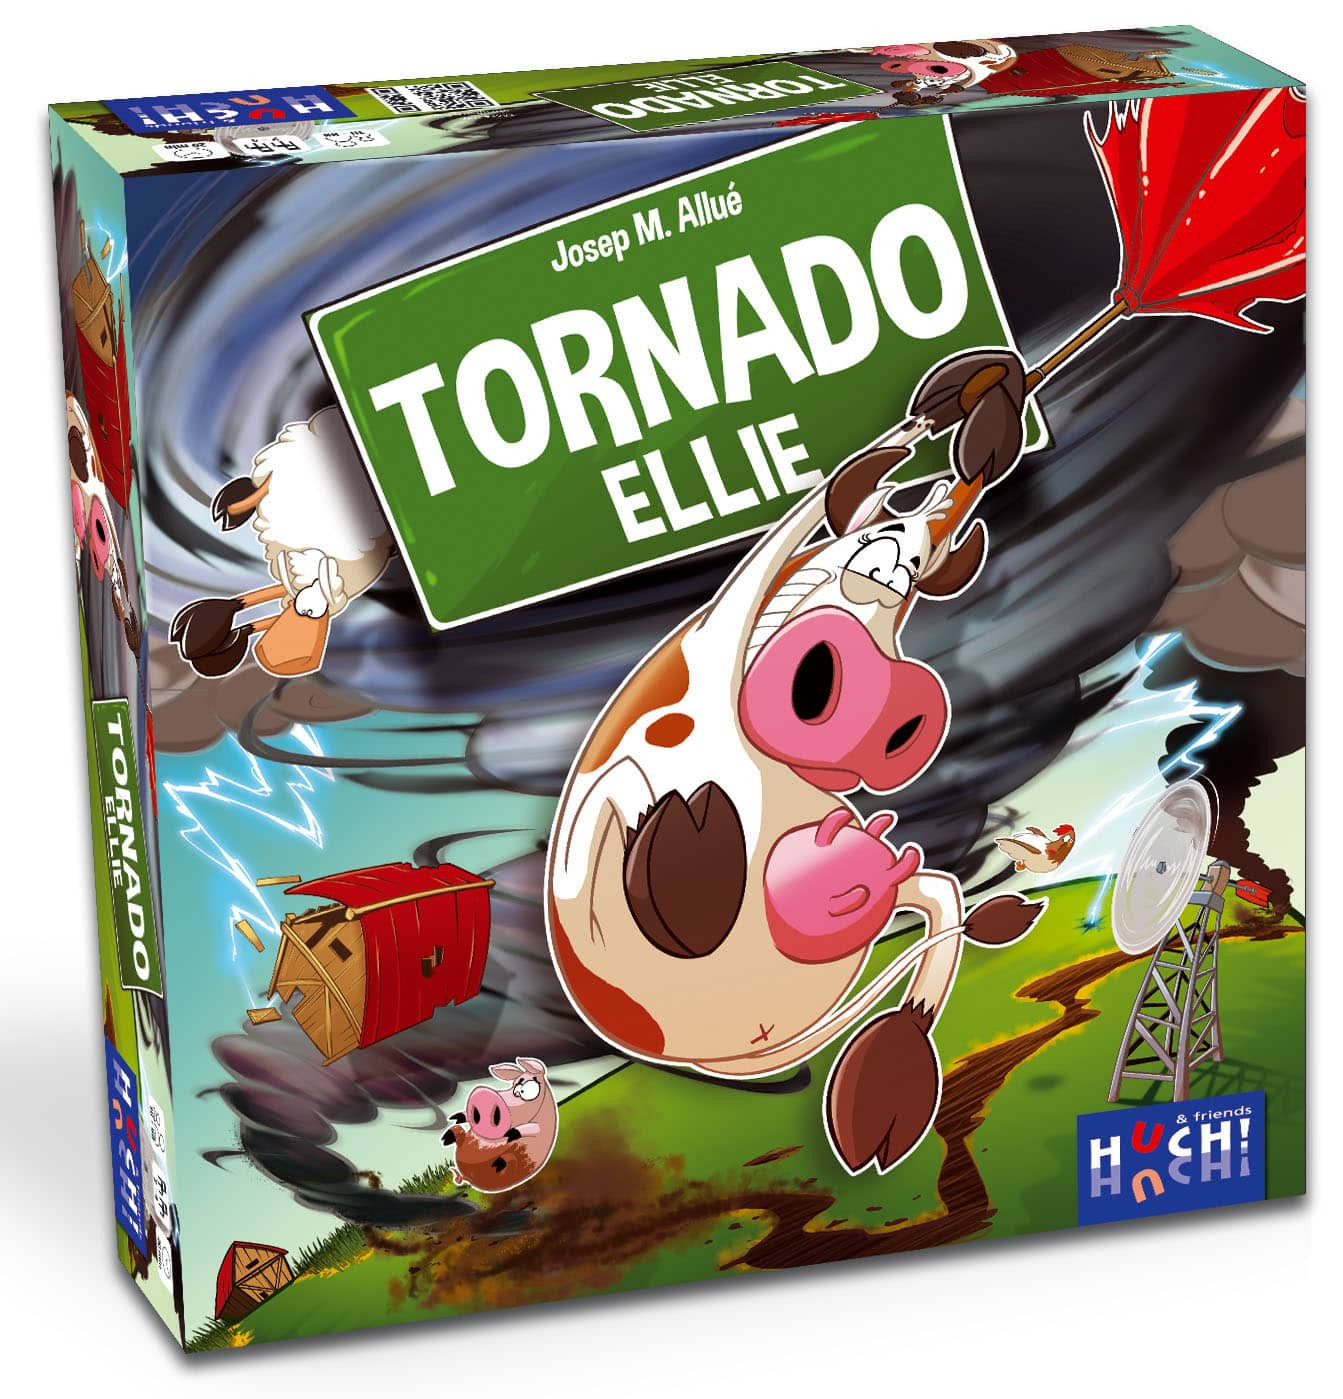 Tornado Ellie